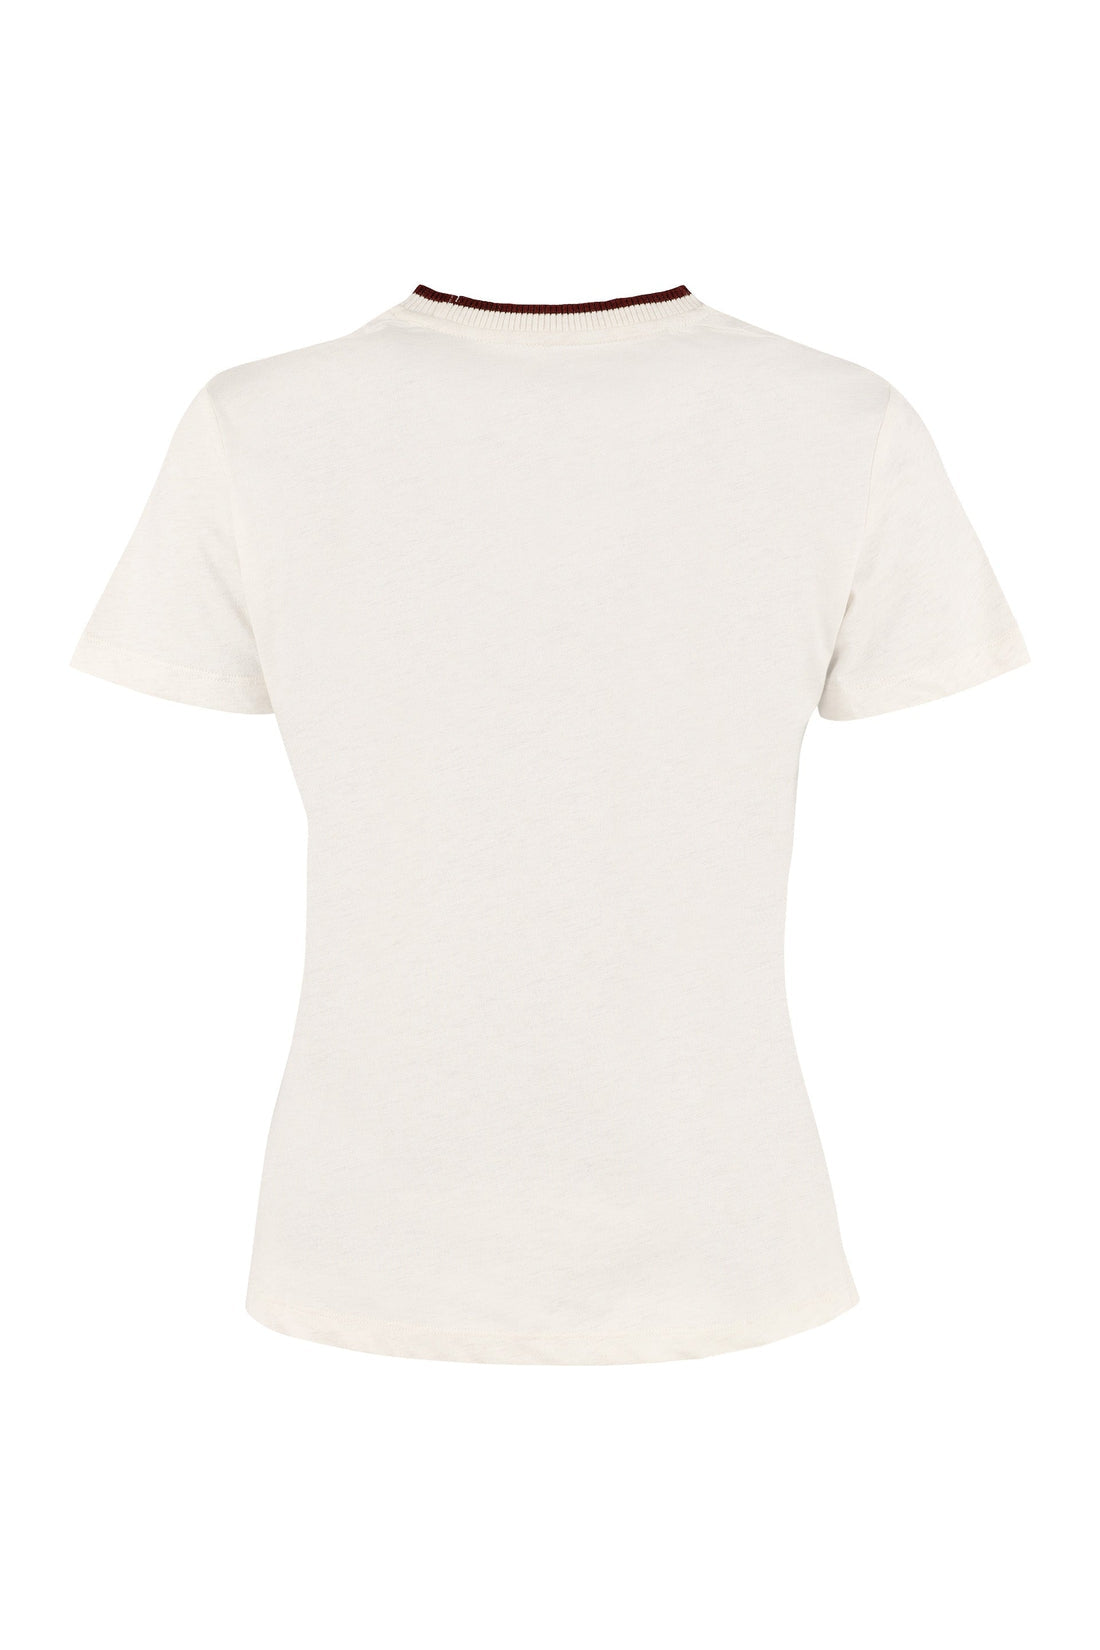 Zimmermann-OUTLET-SALE-Veneto printed cotton T-shirt-ARCHIVIST